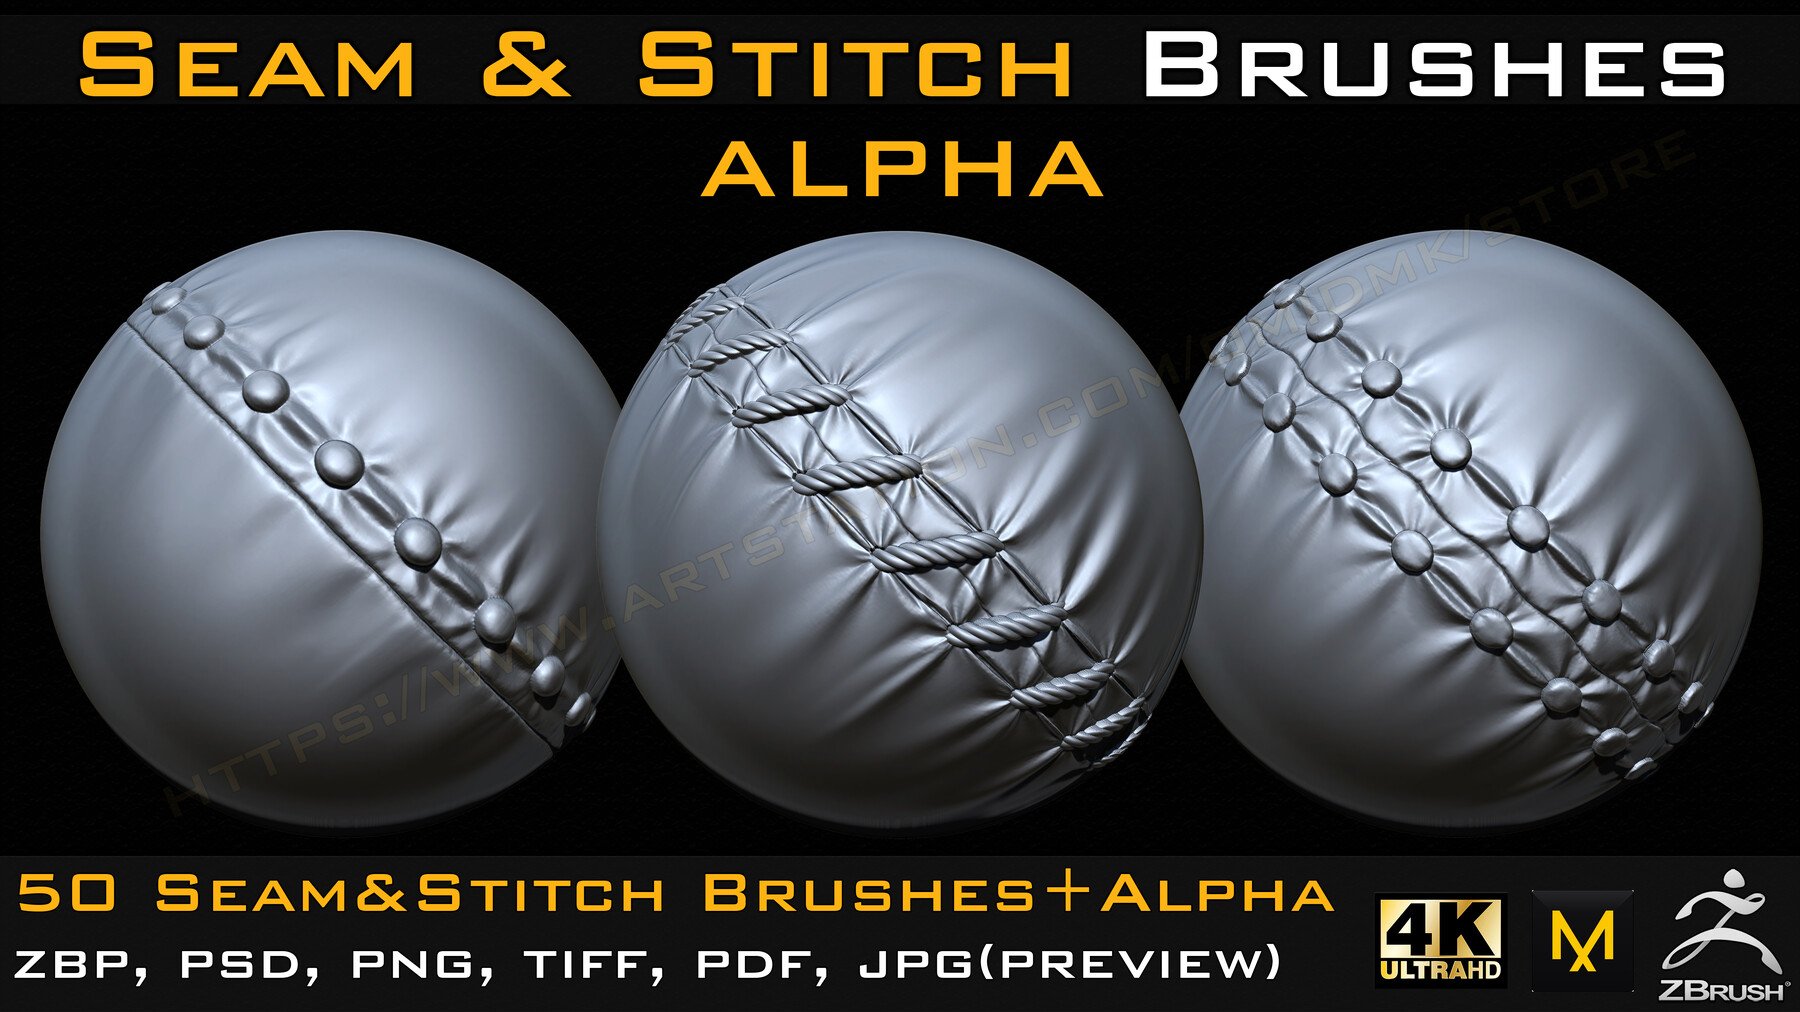 50 Seam & Stitch Brushes + Alpha Vol.4